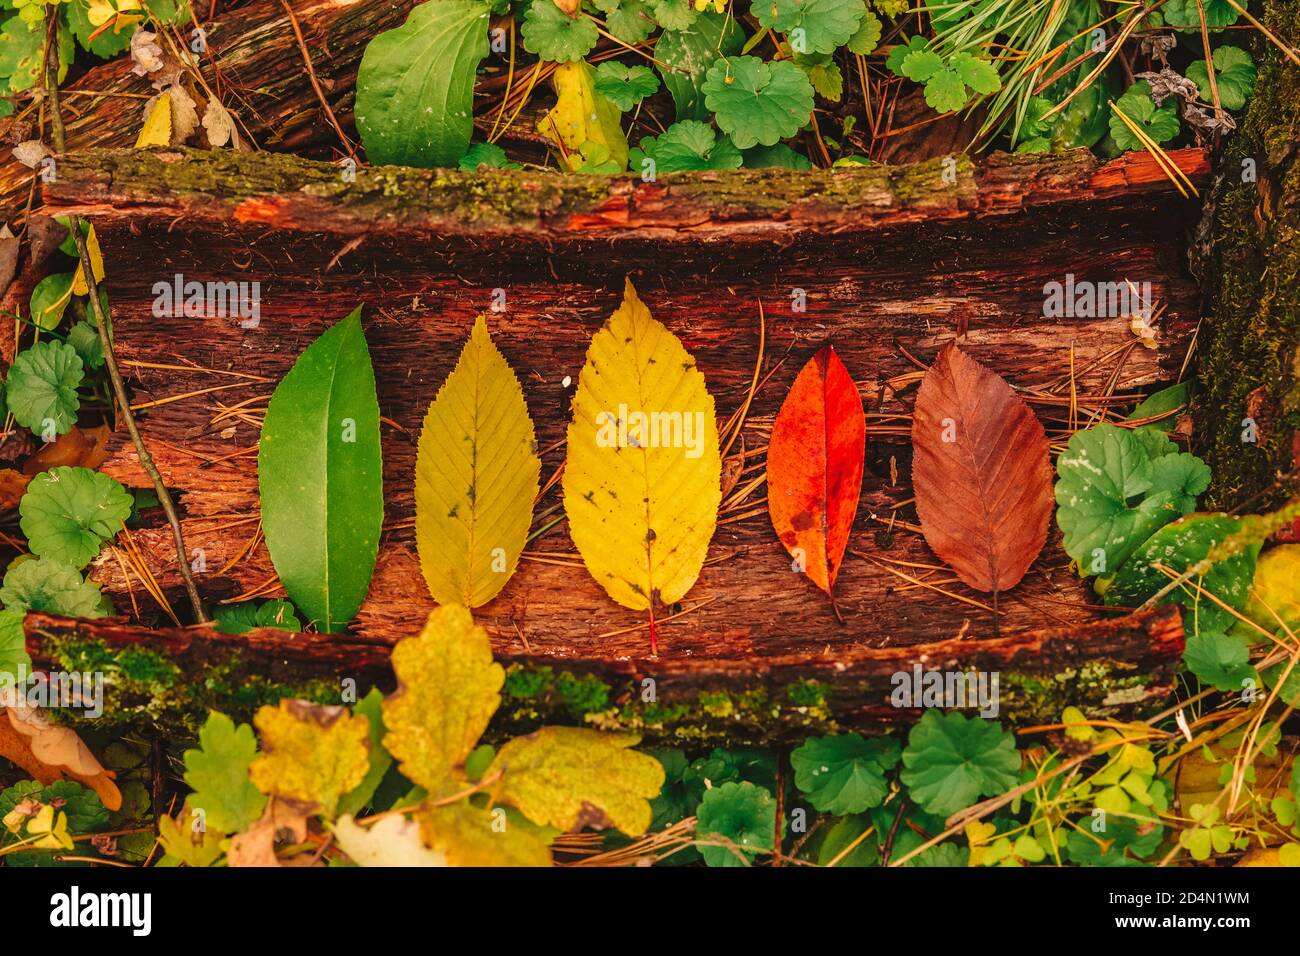 Concetto autunnale del ciclo di vita delle foglie: Diverse fasi di invecchiamento - foglie colorate dal verde al giallo, rosso e marrone. Foto Stock